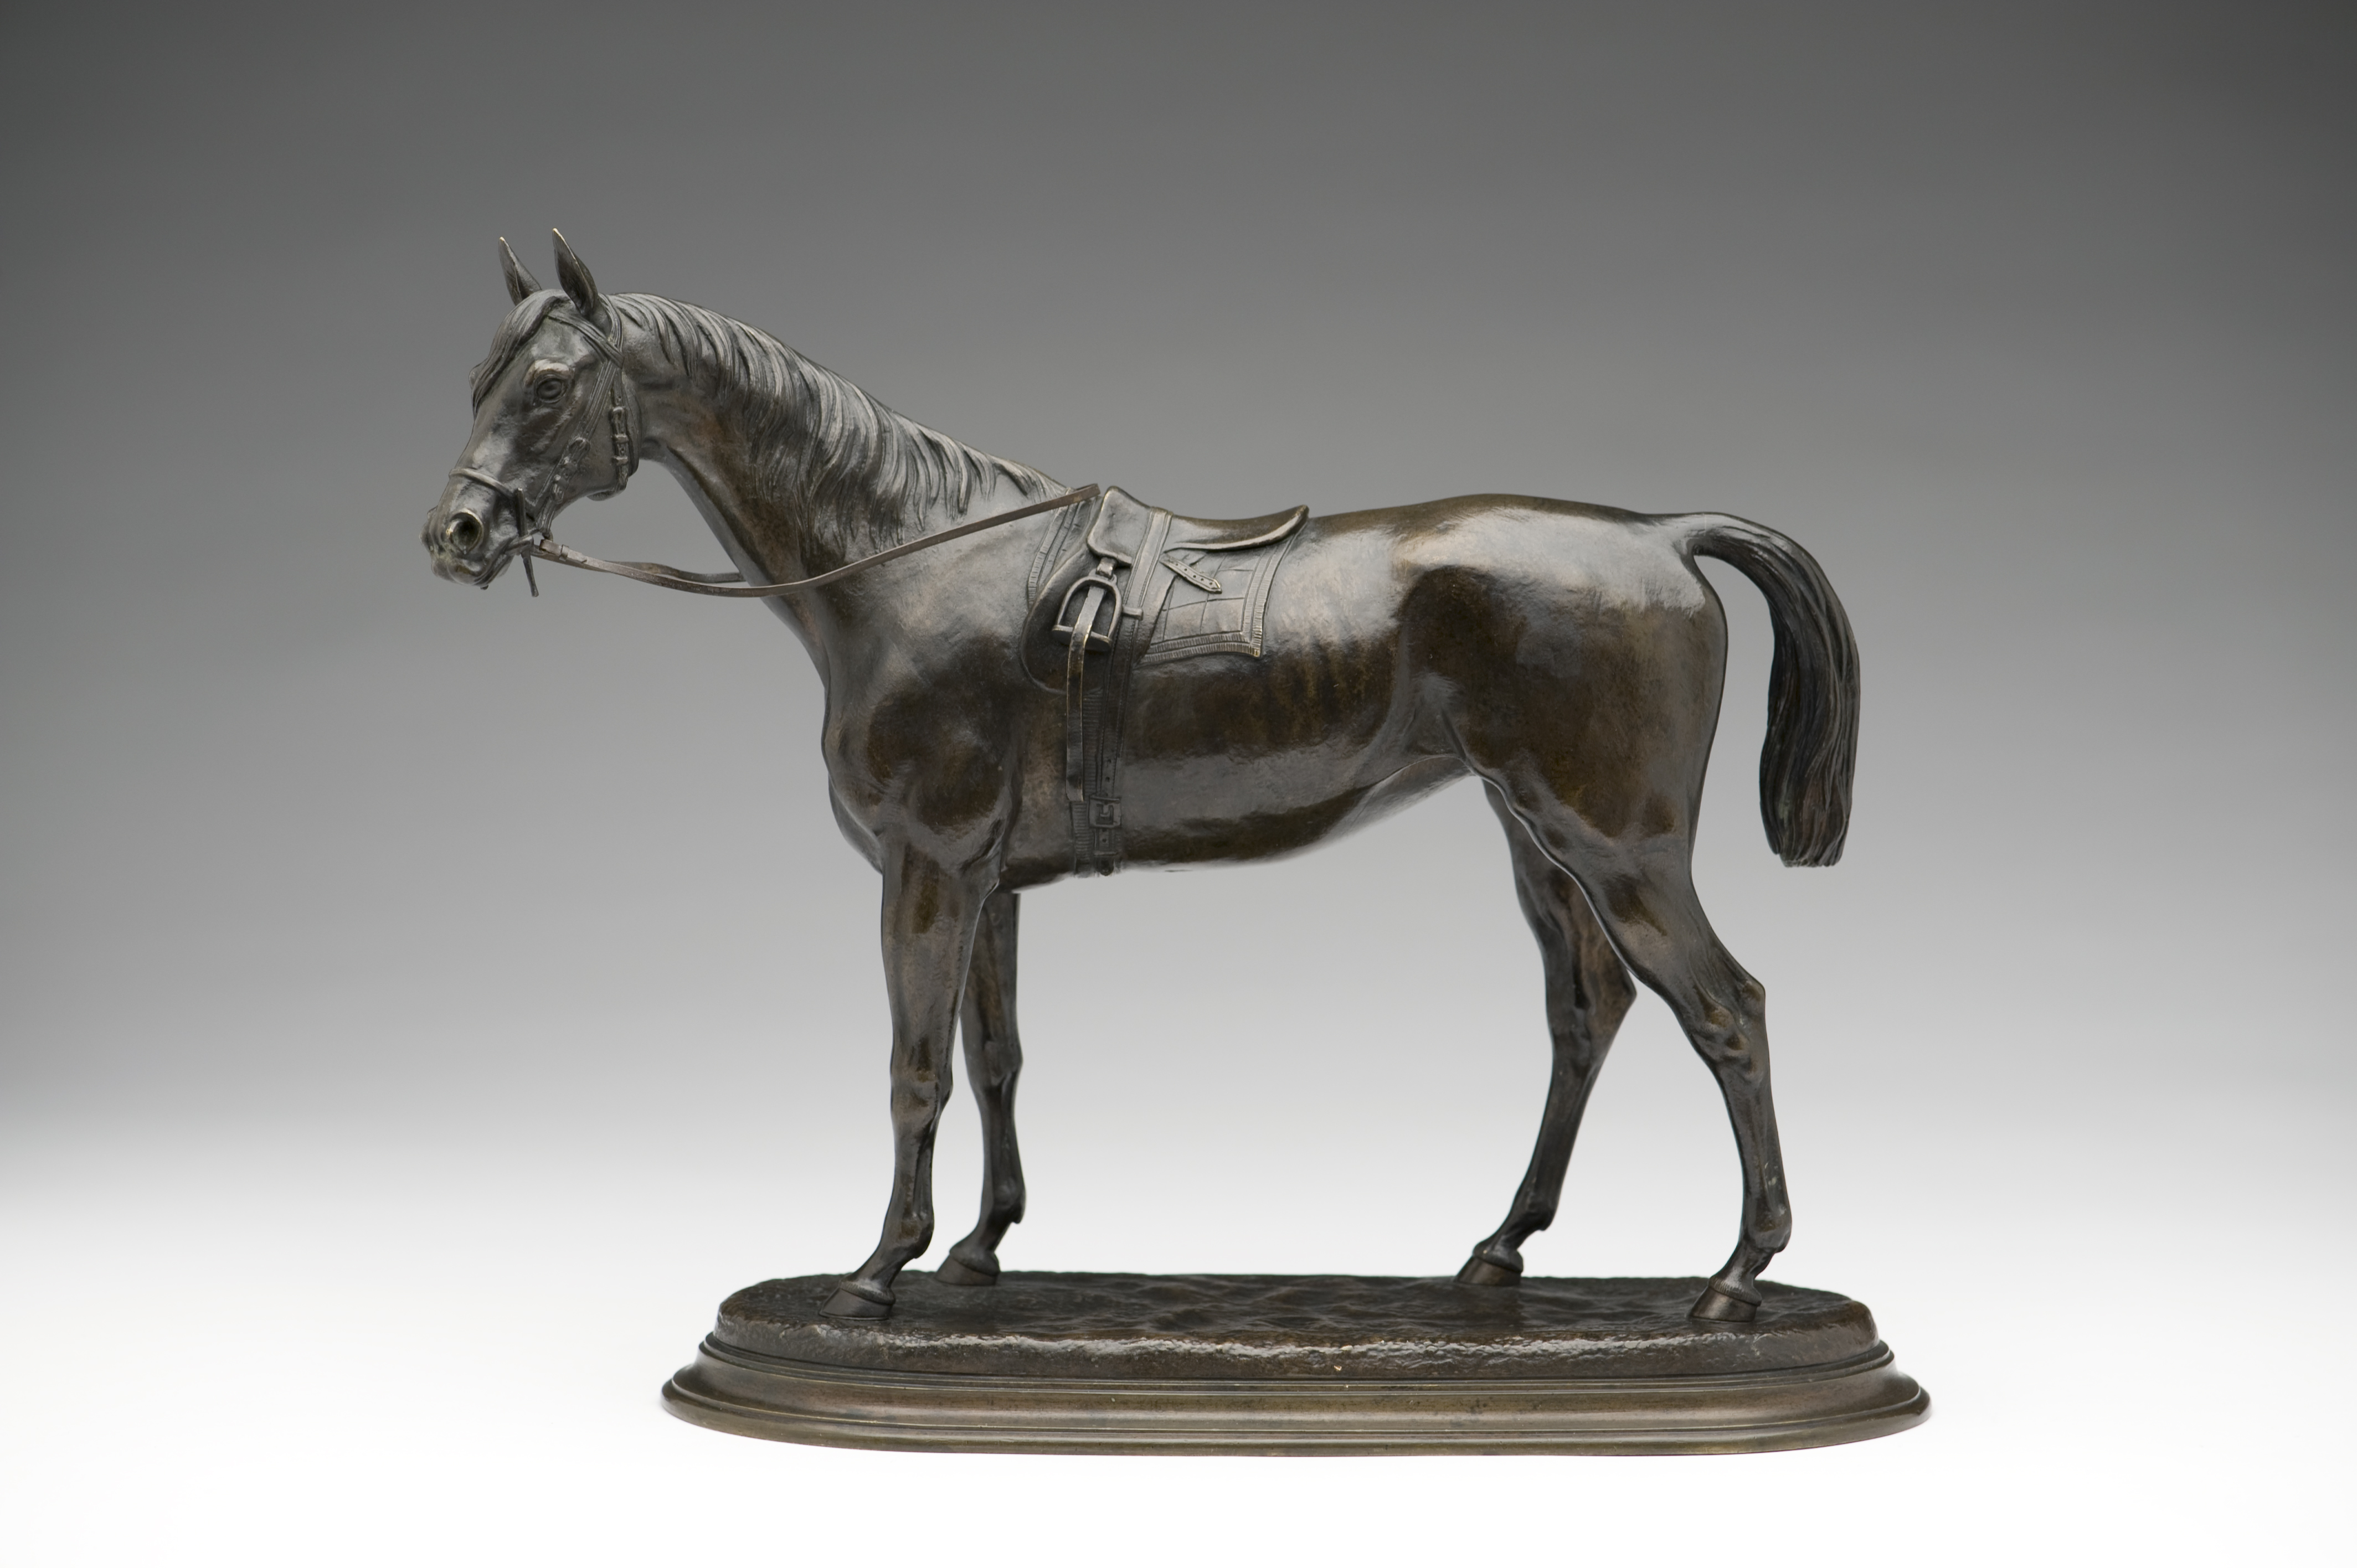 Saddled Racehorse, c. 1860